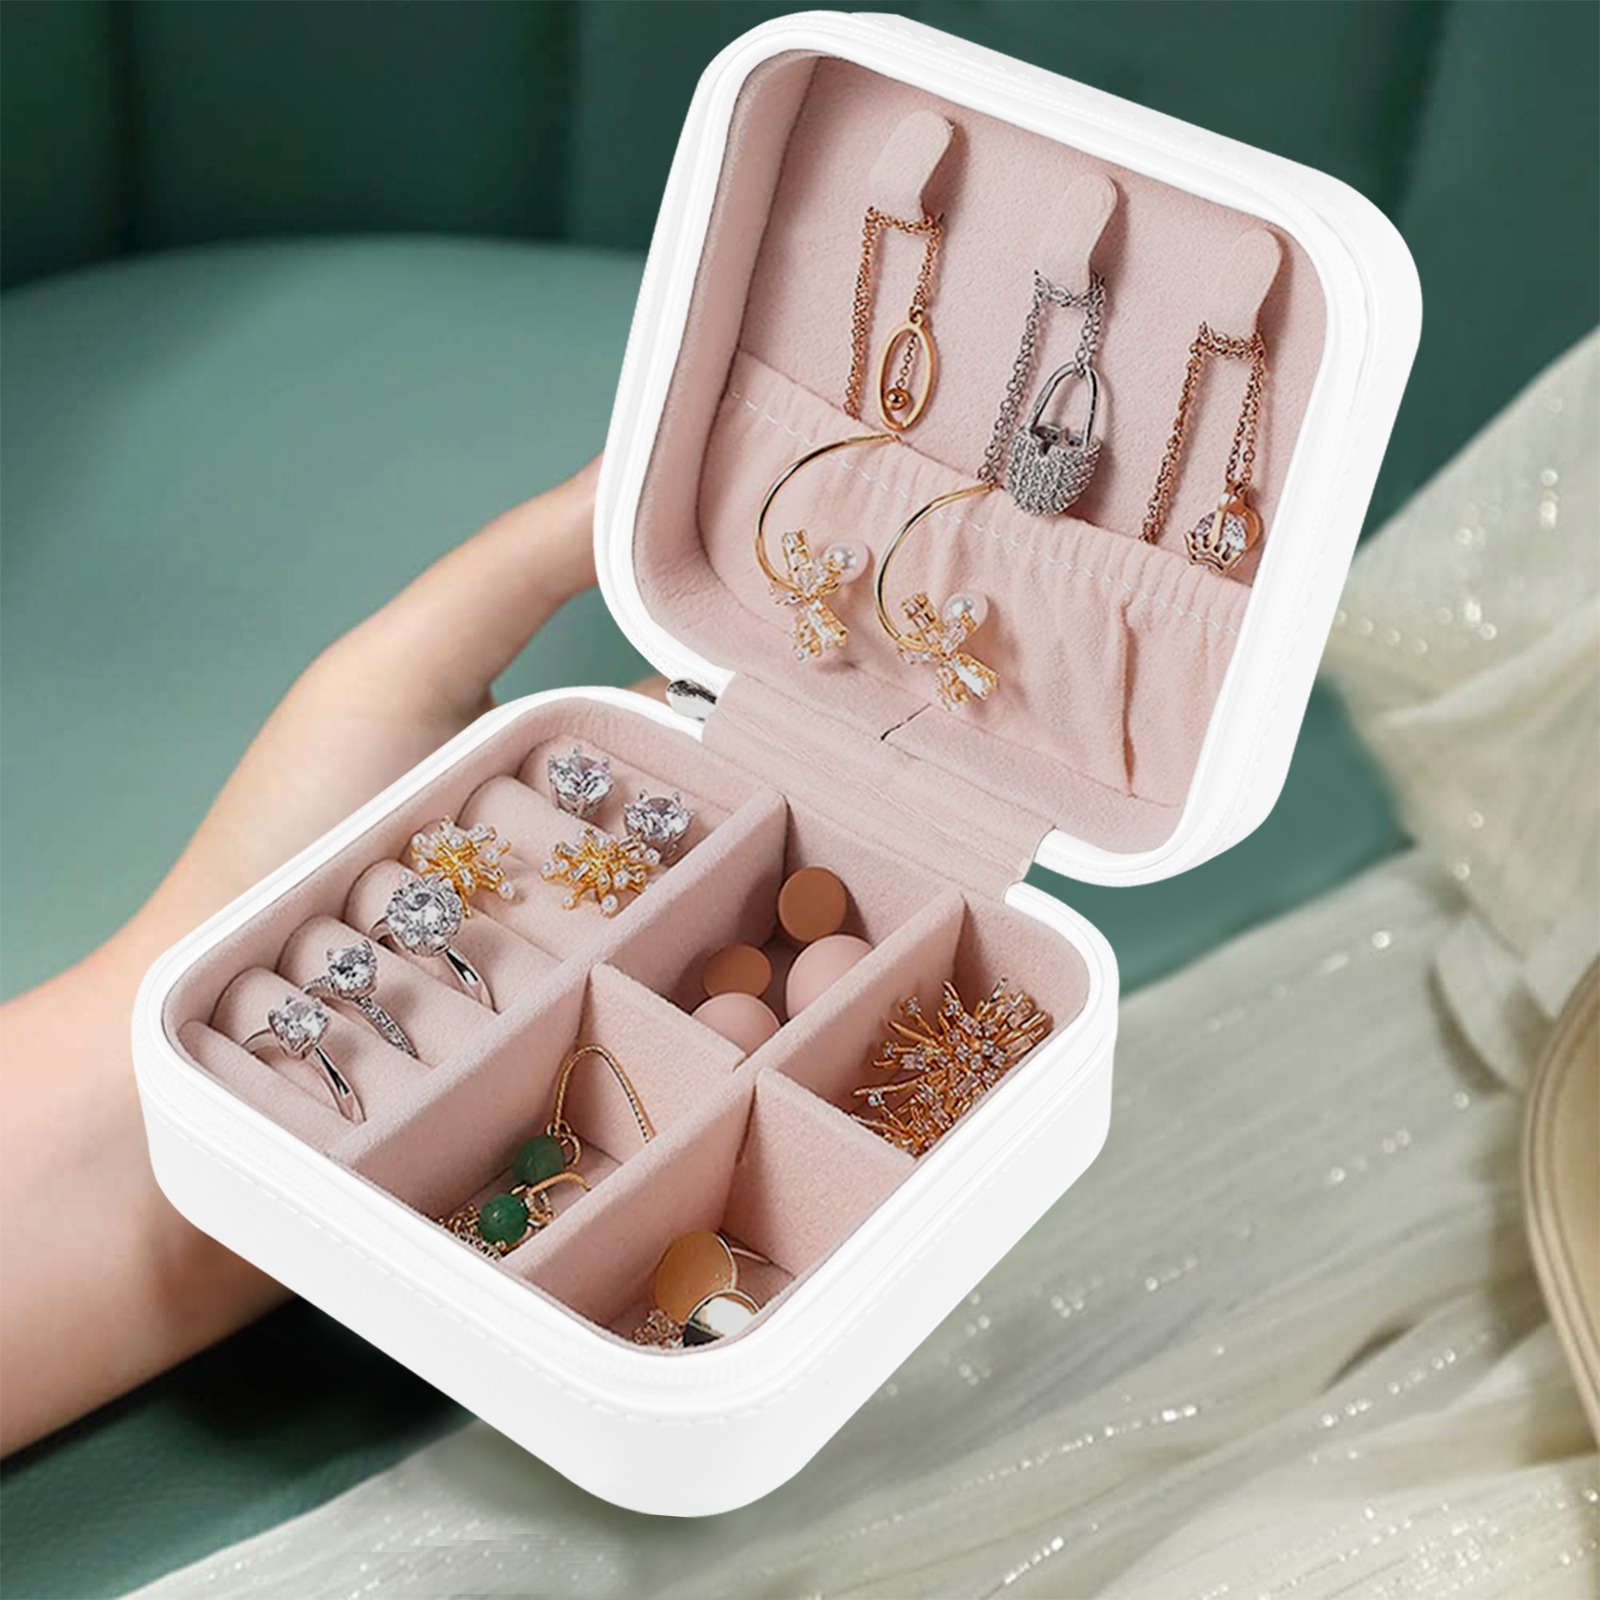 sylvie Custom Printed Travel Jewelry Box